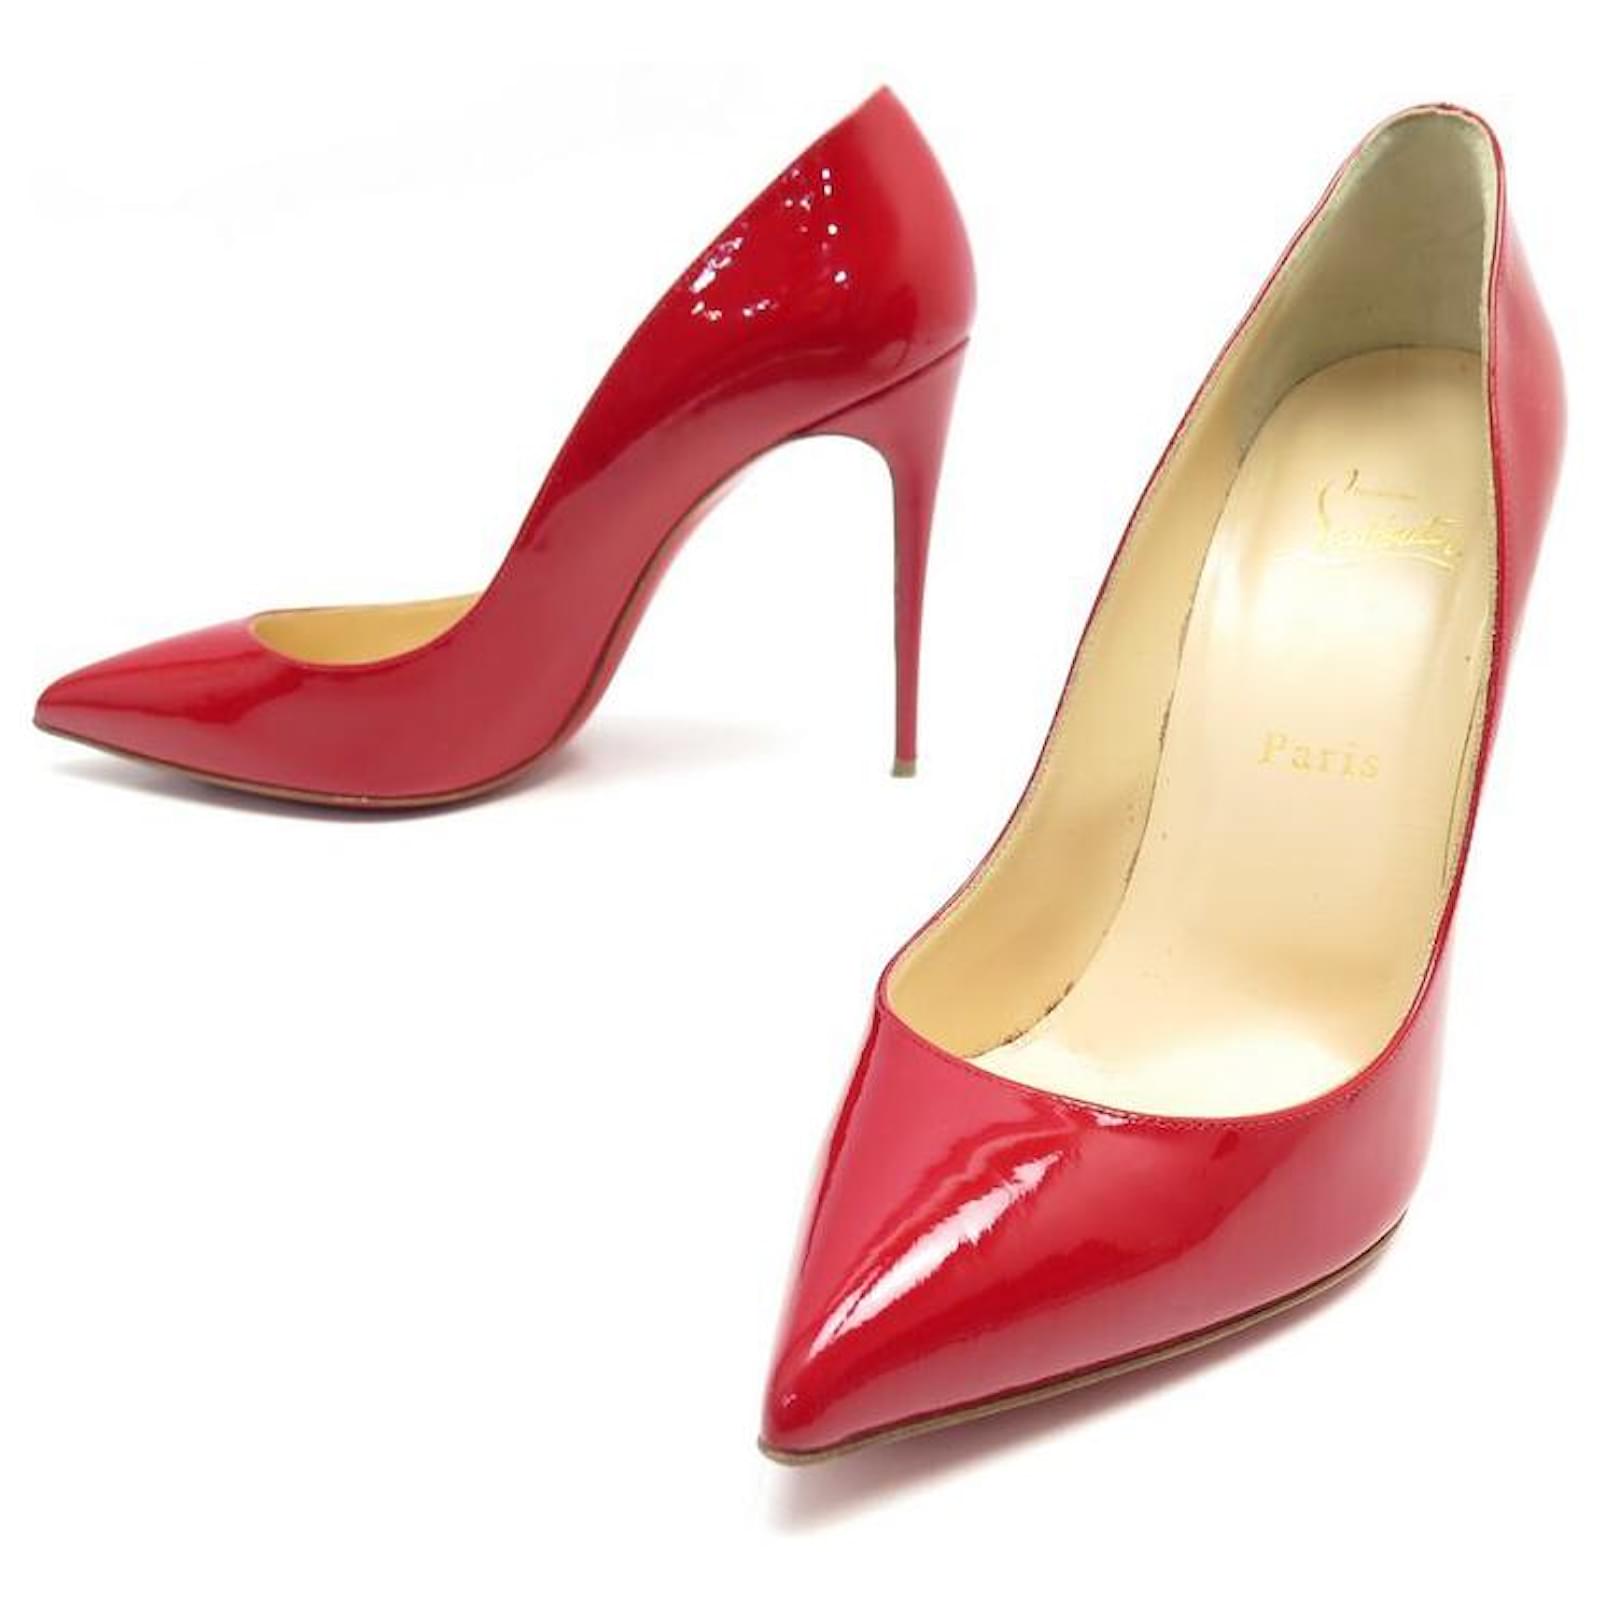 Por qué los zapatos de suela de color rojo de Louboutin son tan caros